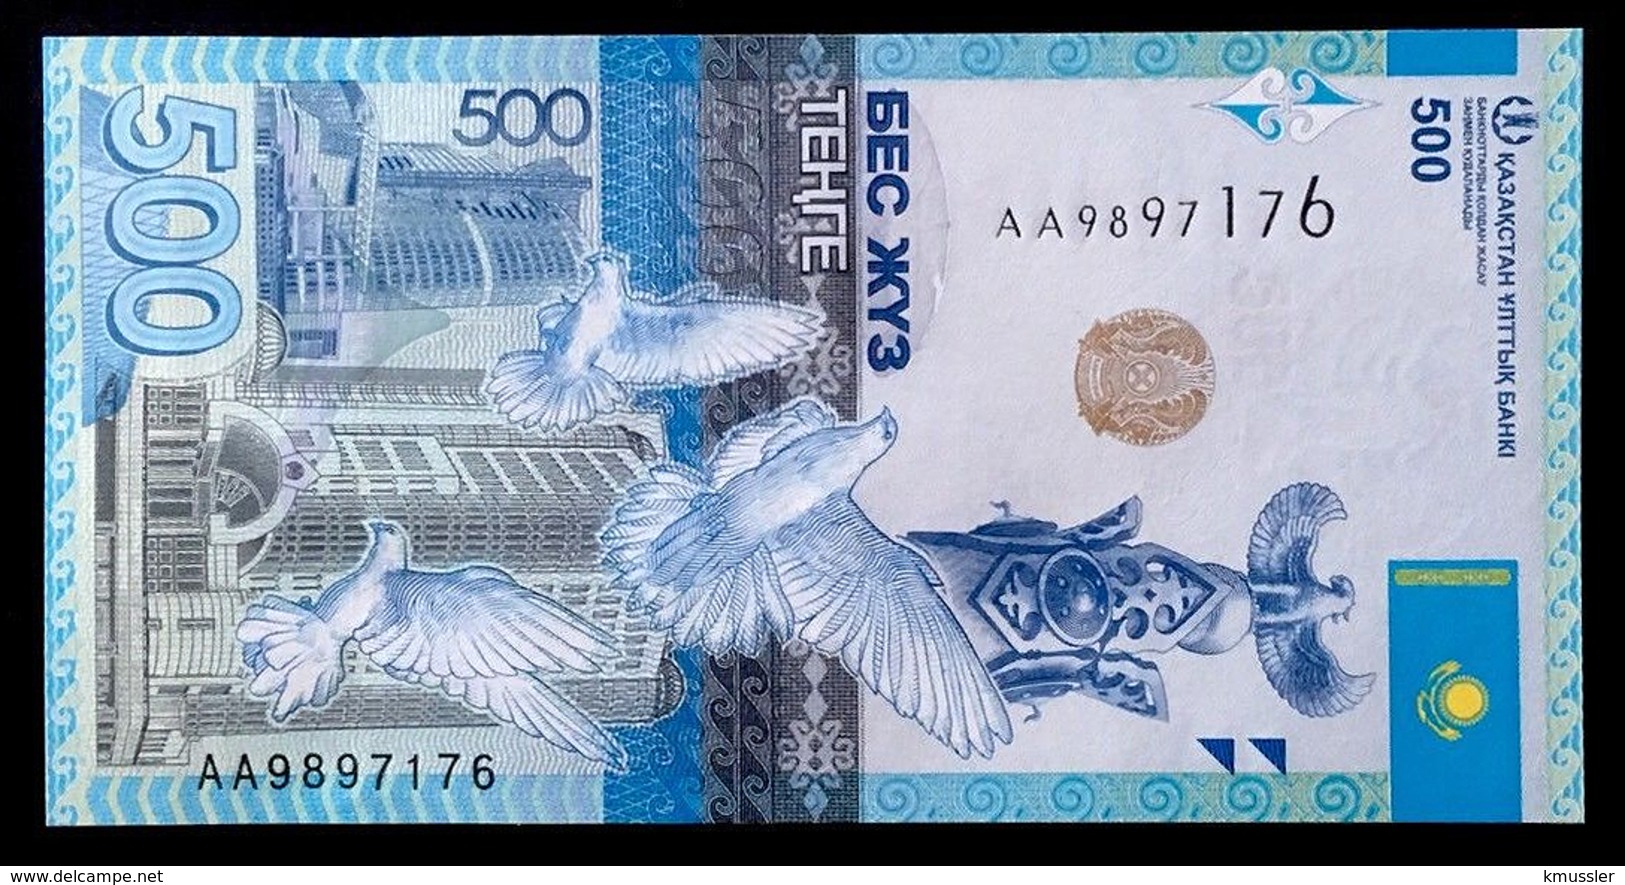 # # # Banknote Kasachstan 500 Tenge UNC # # # - Kasachstan